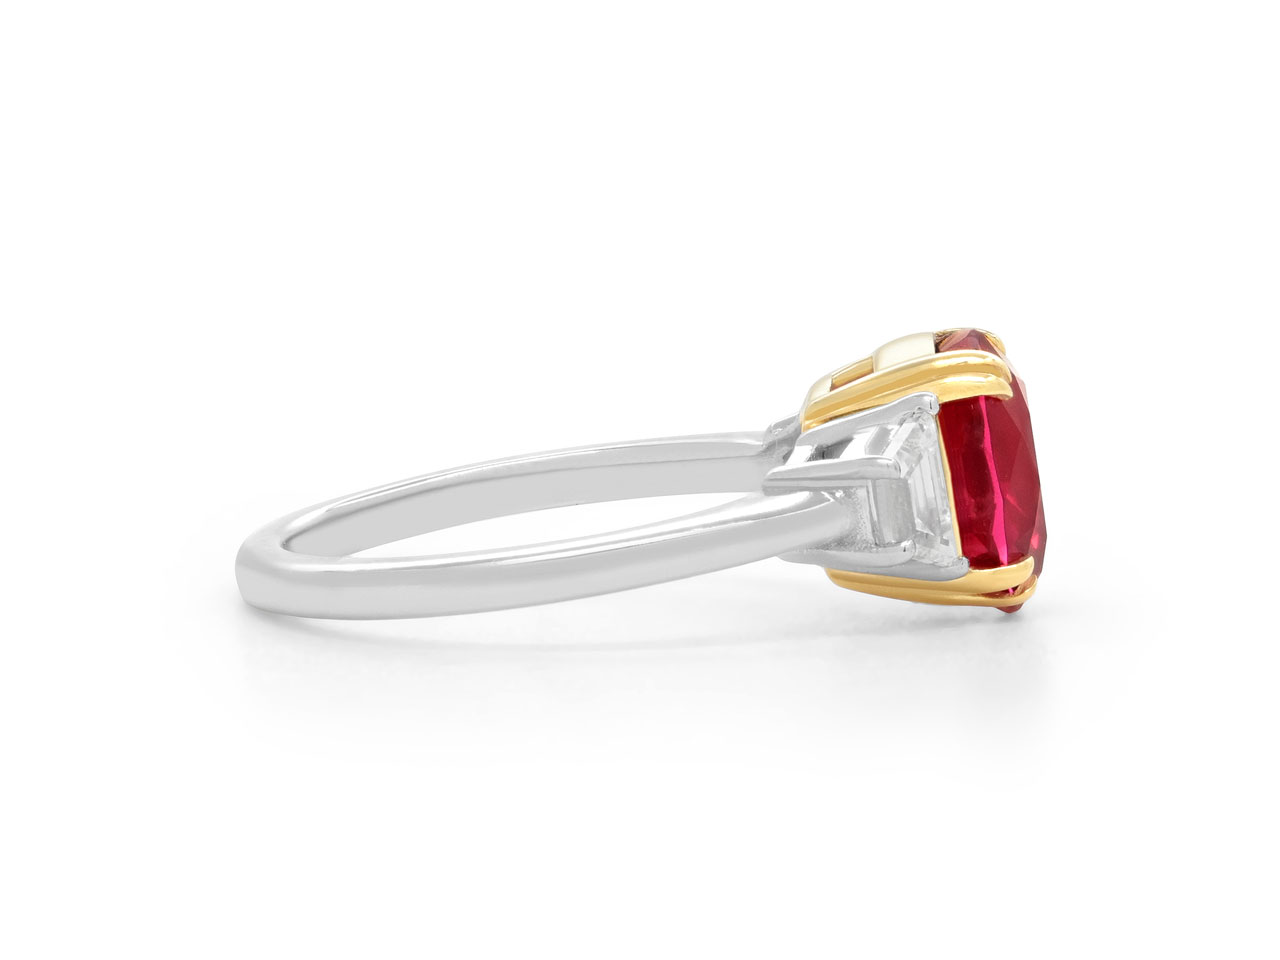 Beladora 'Bespoke' Red Spinel Ring, 3.15 Carat Burma No Heat, in Platinum